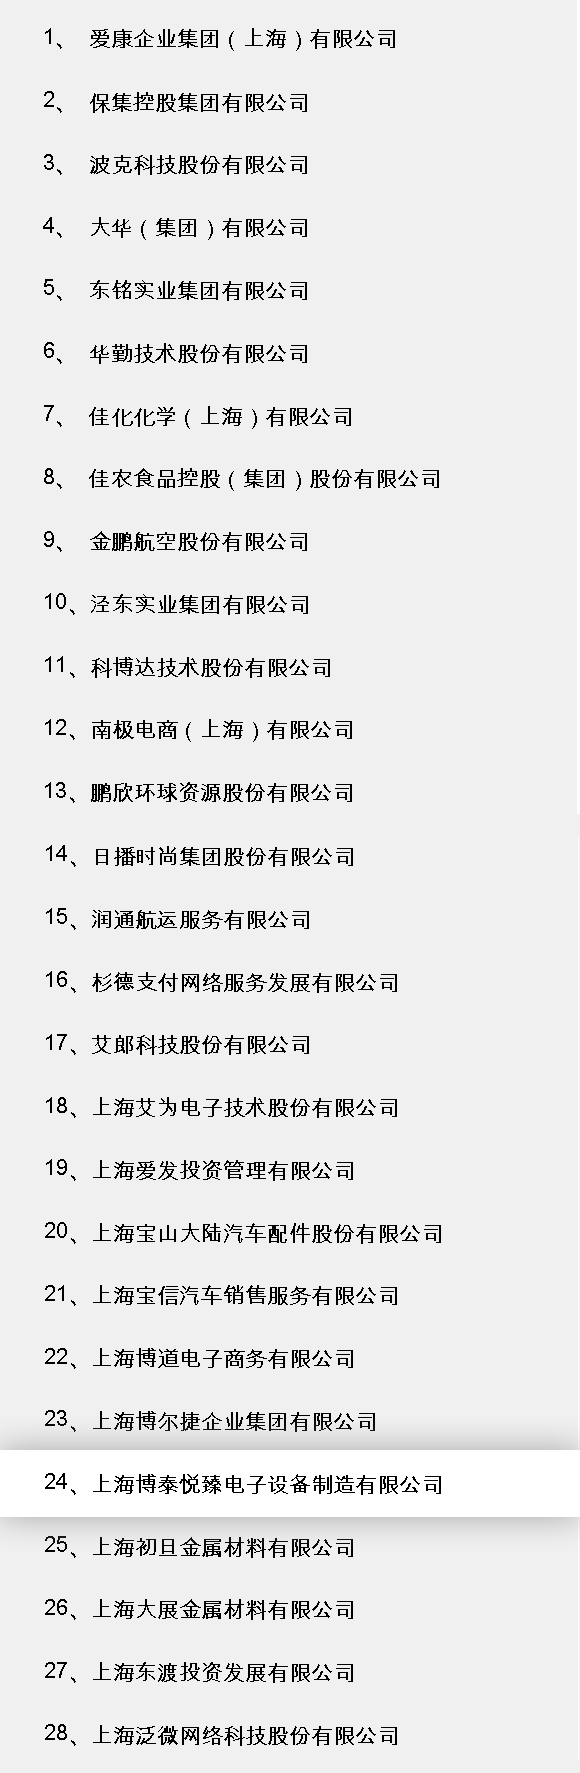 2020年度民营企业总部名单公布,上海博泰车联网榜上有名